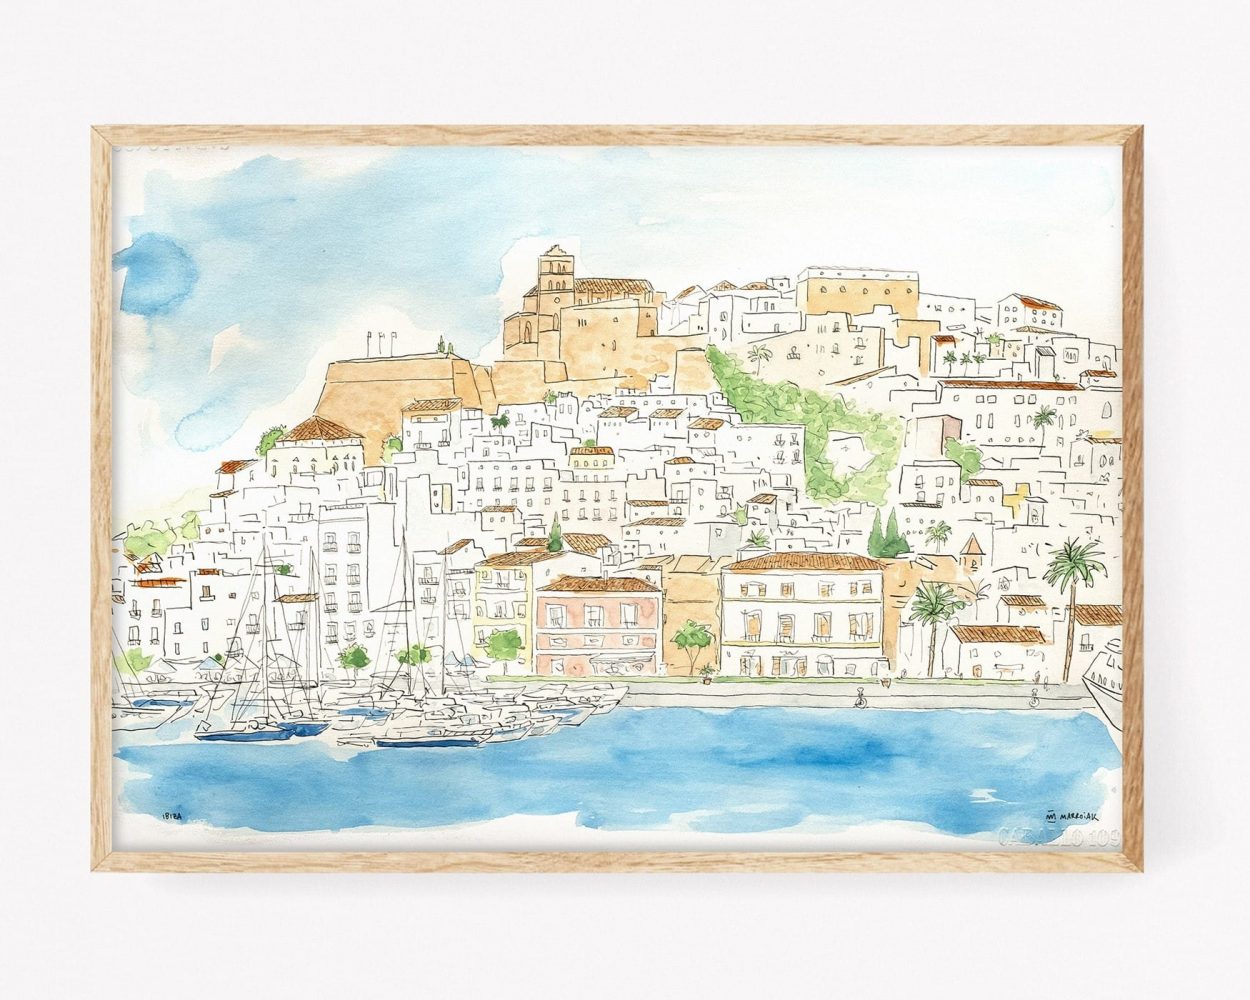 Acuarela original de Dalt Vila, Ibiza. Cuadros decorativos para enmarcar con imágenes de Eivissa y su centro histórico antiguo. Ilustraicones de las Islas Baleares